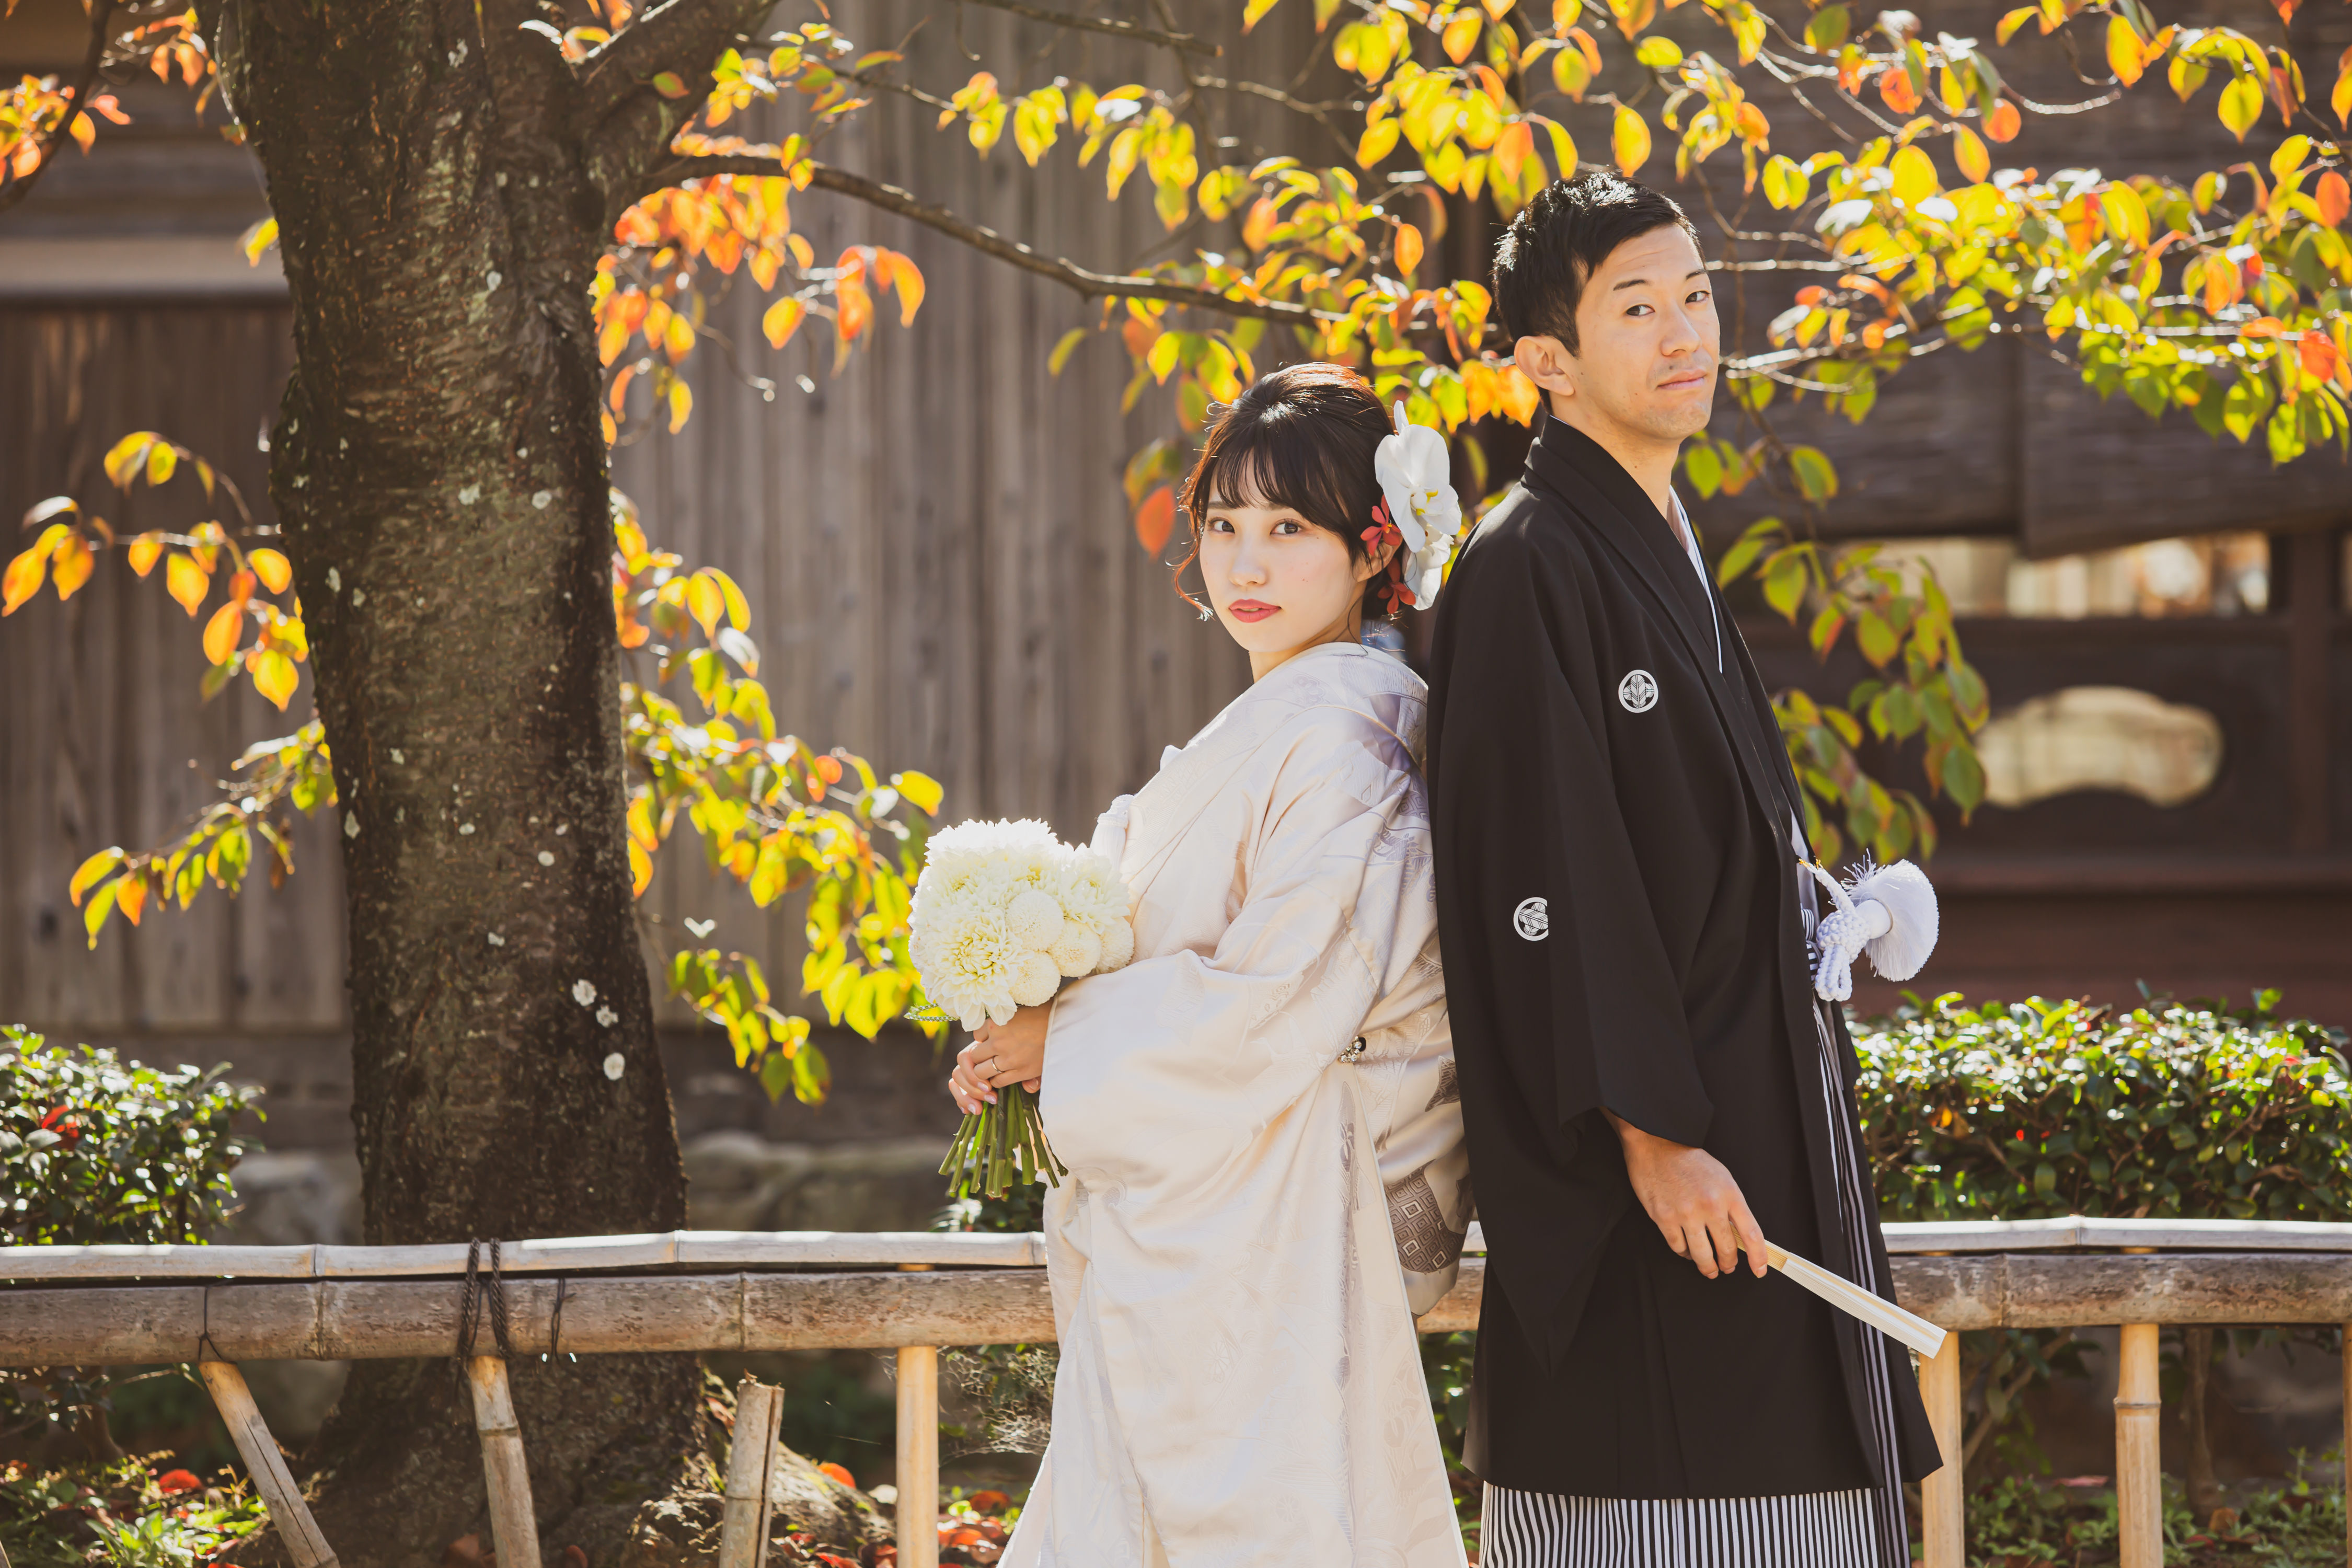 和装結婚式こそ指先のおしゃれを楽しんで 京都でフォトウェディング 着物撮影なら阿部写真館 祇園会館店